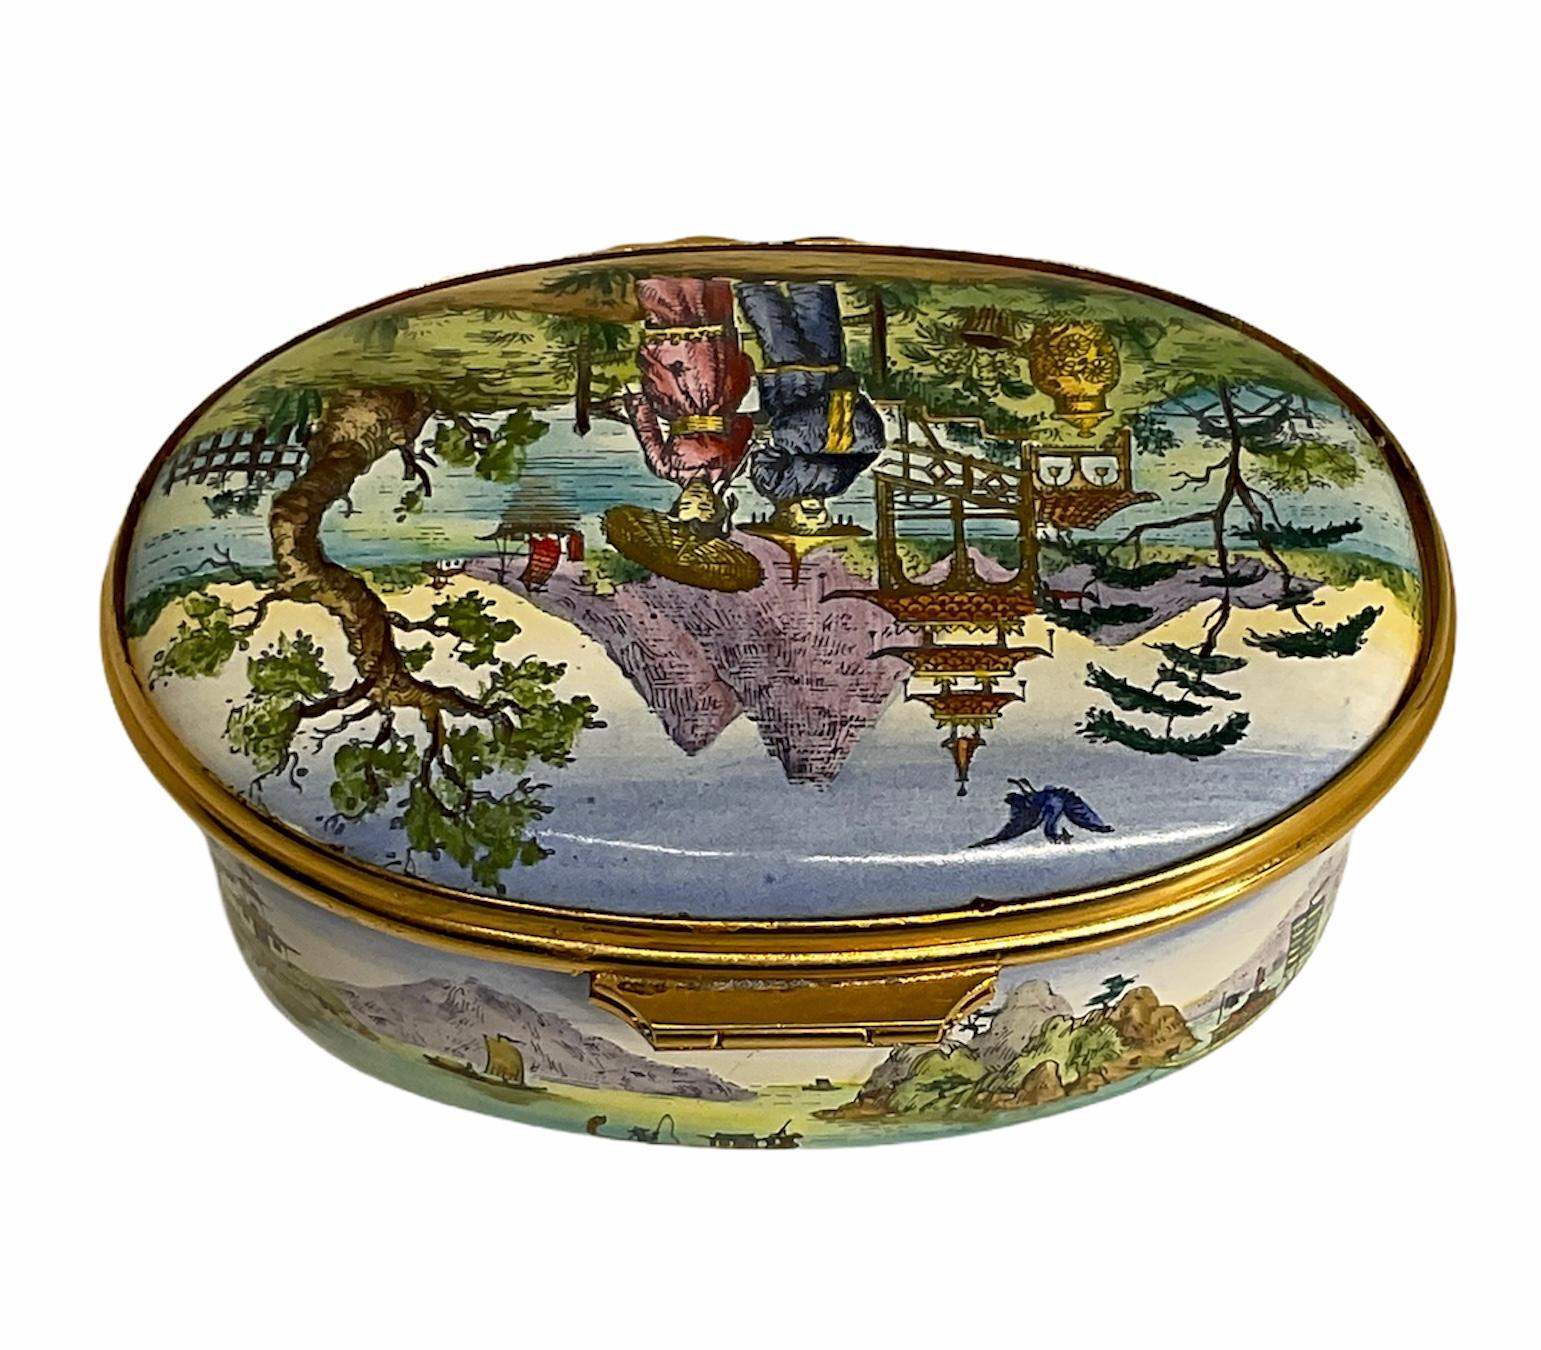 Il s'agit d'une boîte à bijoux ovale en porcelaine émaillée peinte à la main par Cartier. Il représente un paysage d'Asie orientale avec un couple portant des tenues orientales sur le devant du couvercle. La base est également ornée d'un paysage de